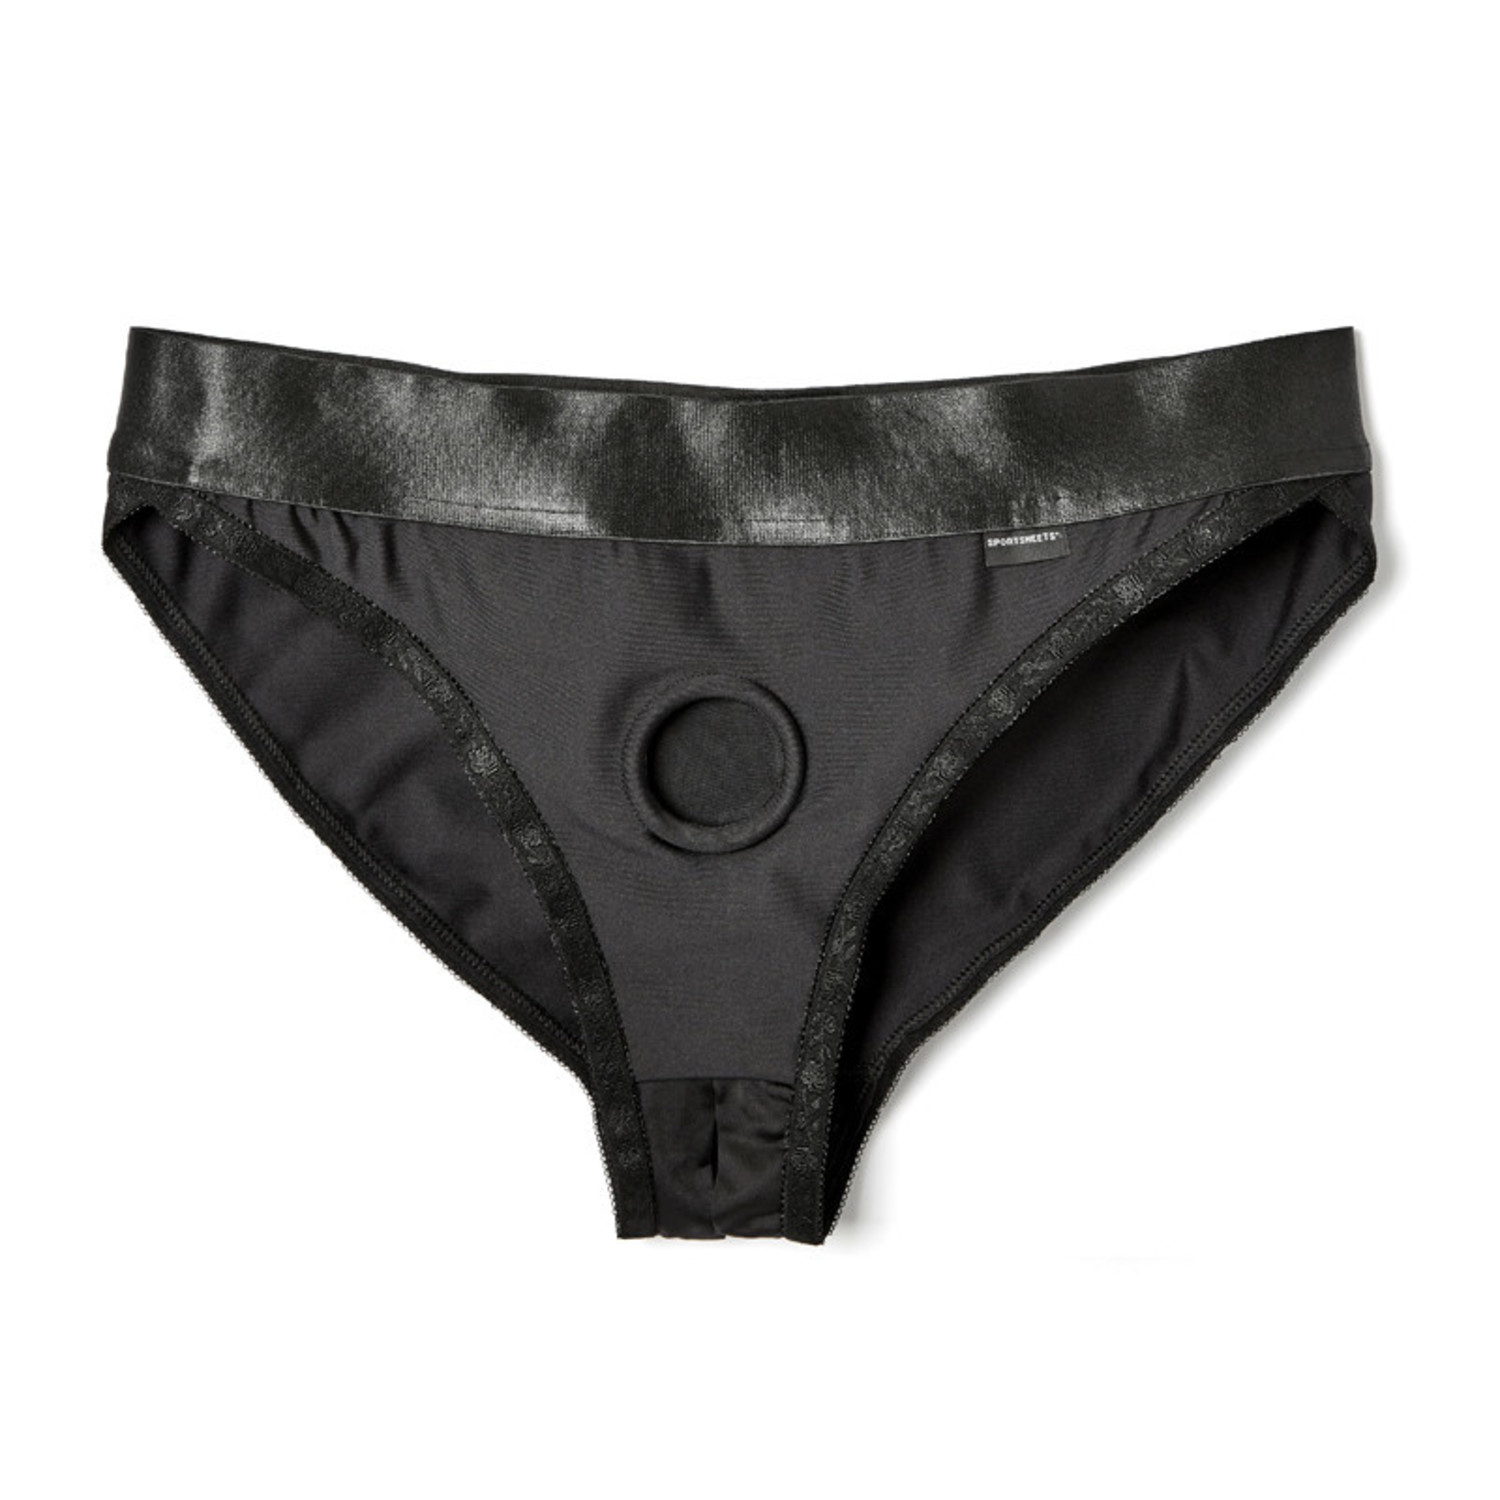 Strapon Underwear Harness by Sportsheets, Bondesque